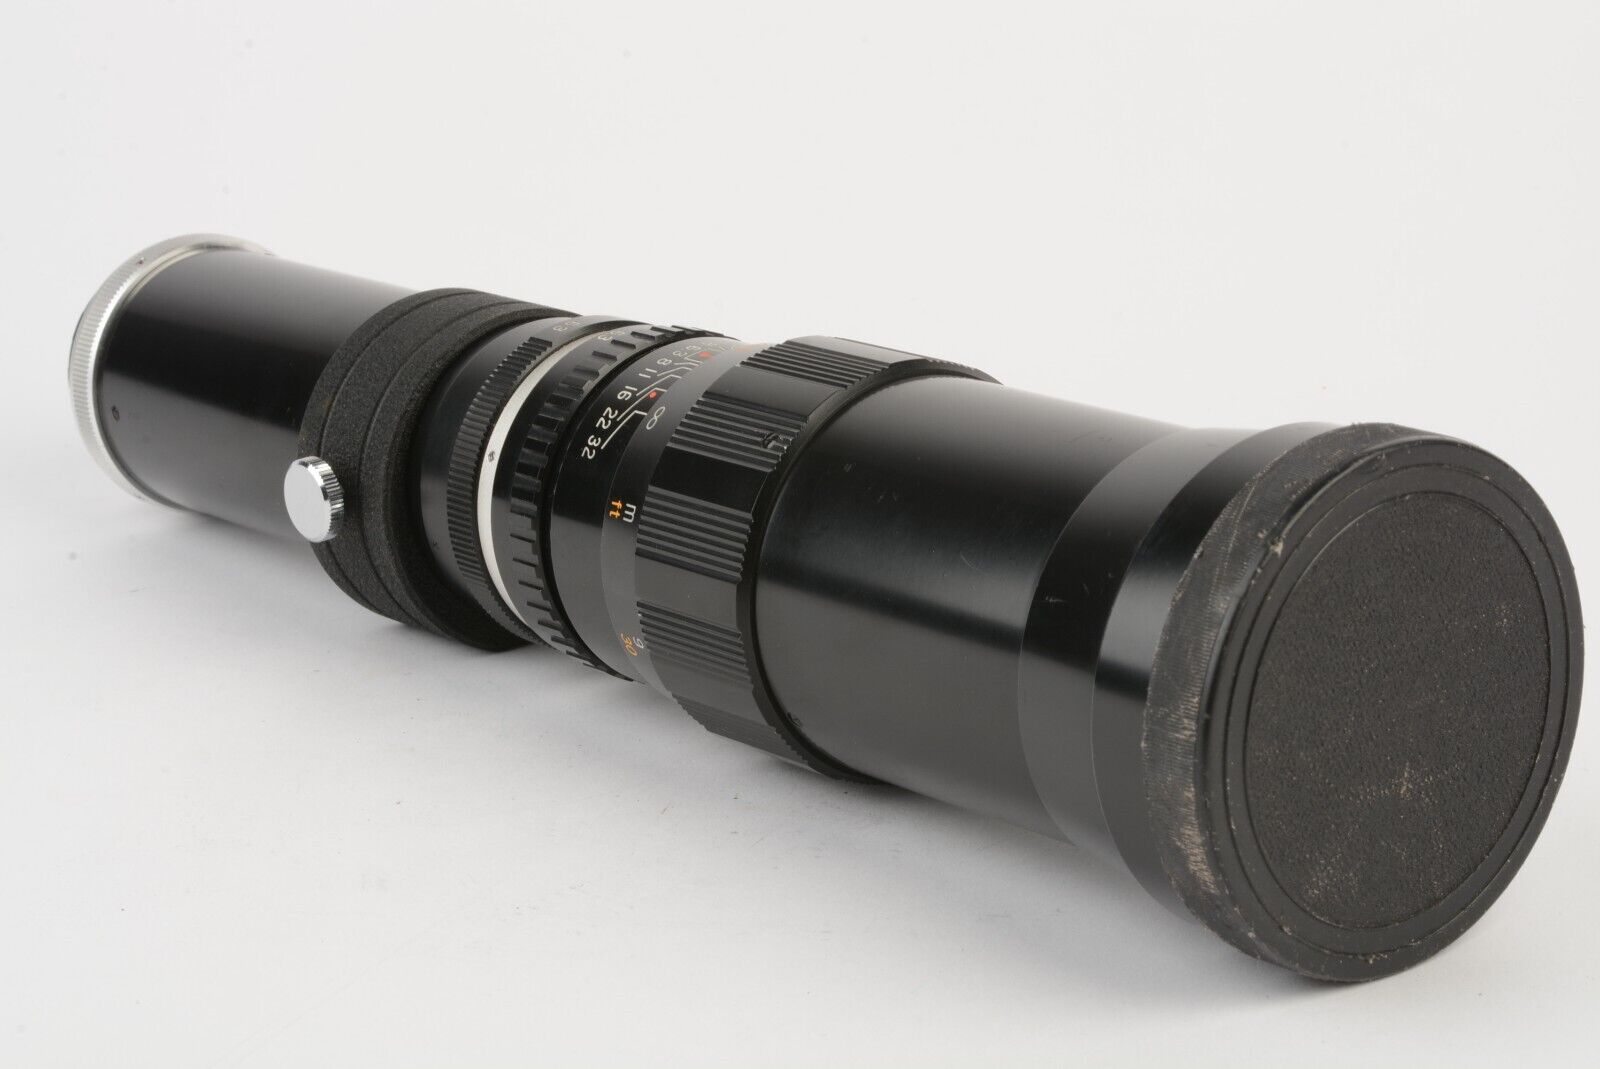 EXC++ TELE LENTAR 400mm F6.3 PRIME TELEPHOTO LENS FOR M42 SCREW MOUNT + CAPS